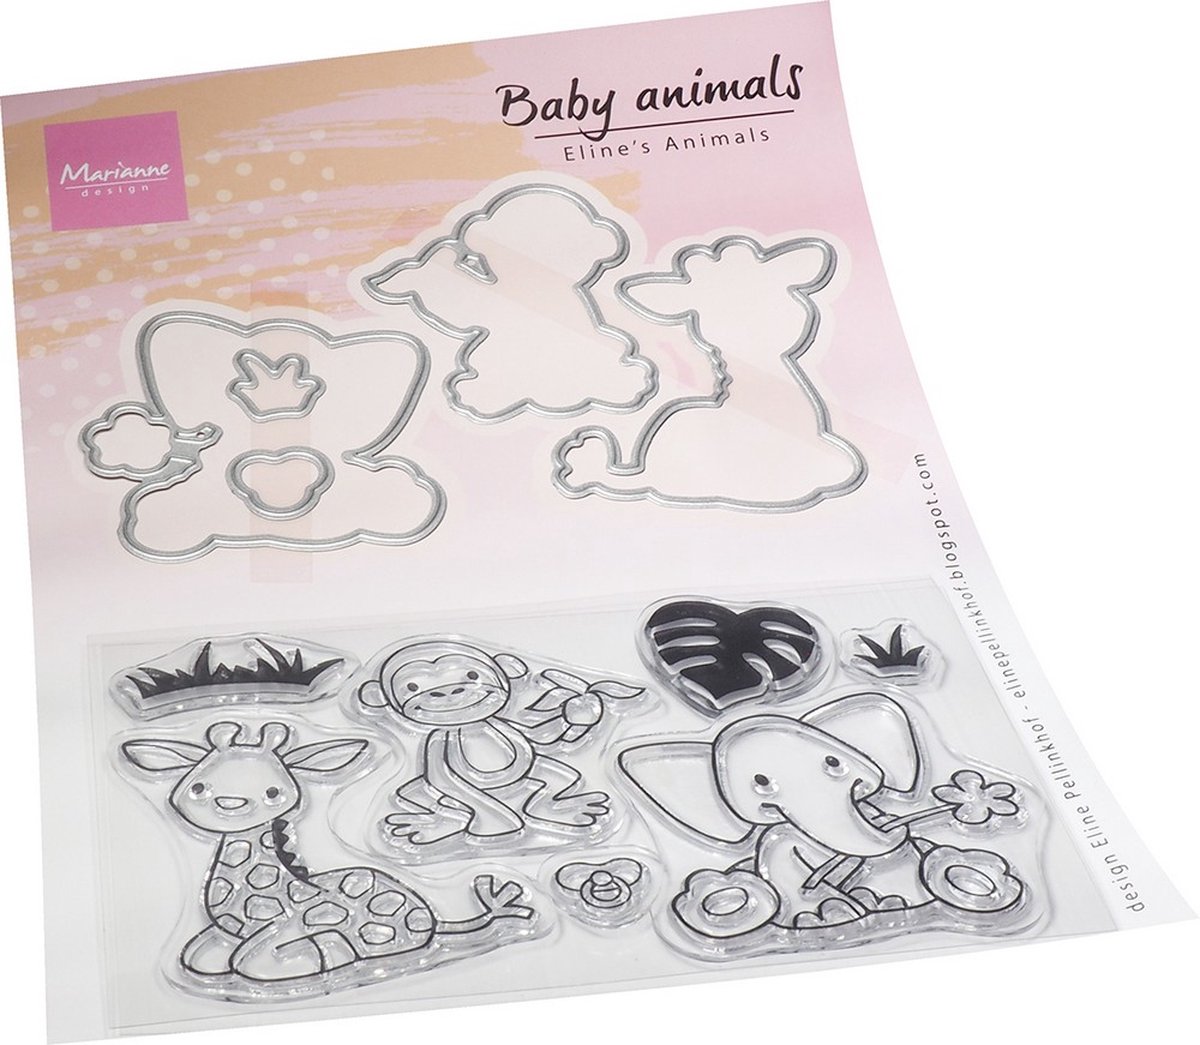 Marianne Design Elines Animals Clear Stamps & Dies Baby Animals 12stuks